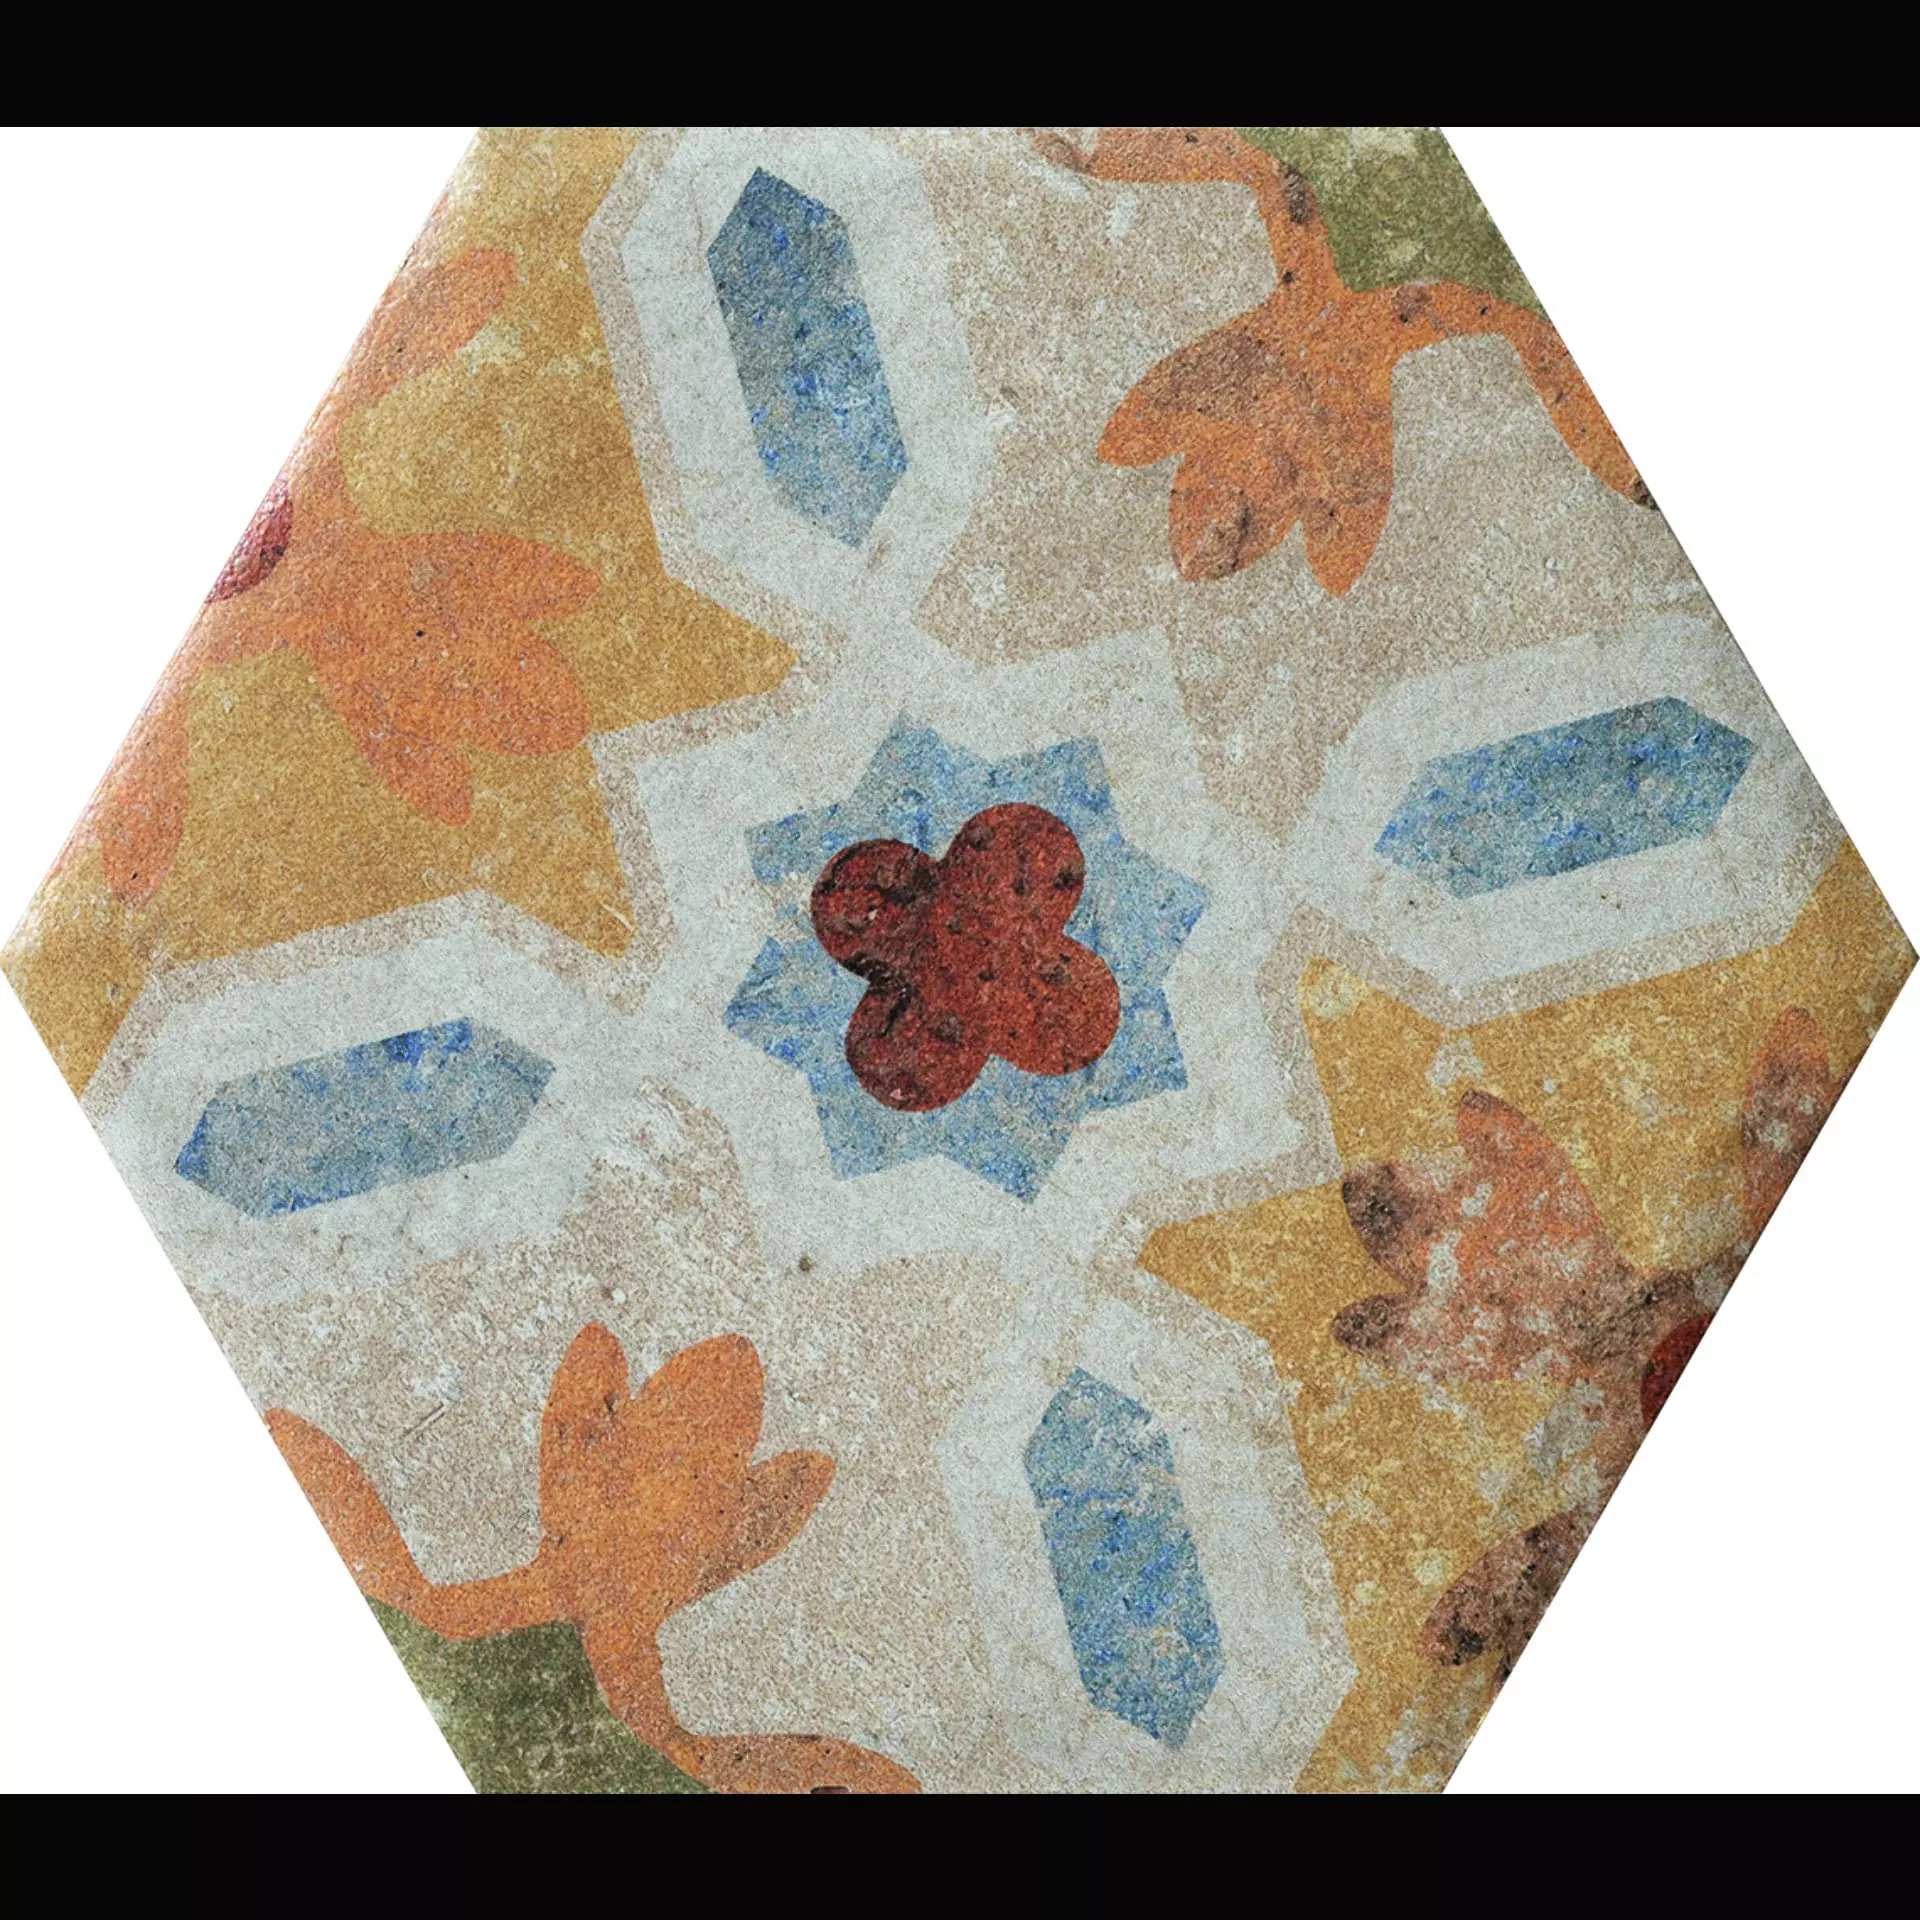 CIR Cotto Del Campiano Terre Emiliane Mix Naturale Hexagon 1081302 15,8x18,3cm 10mm